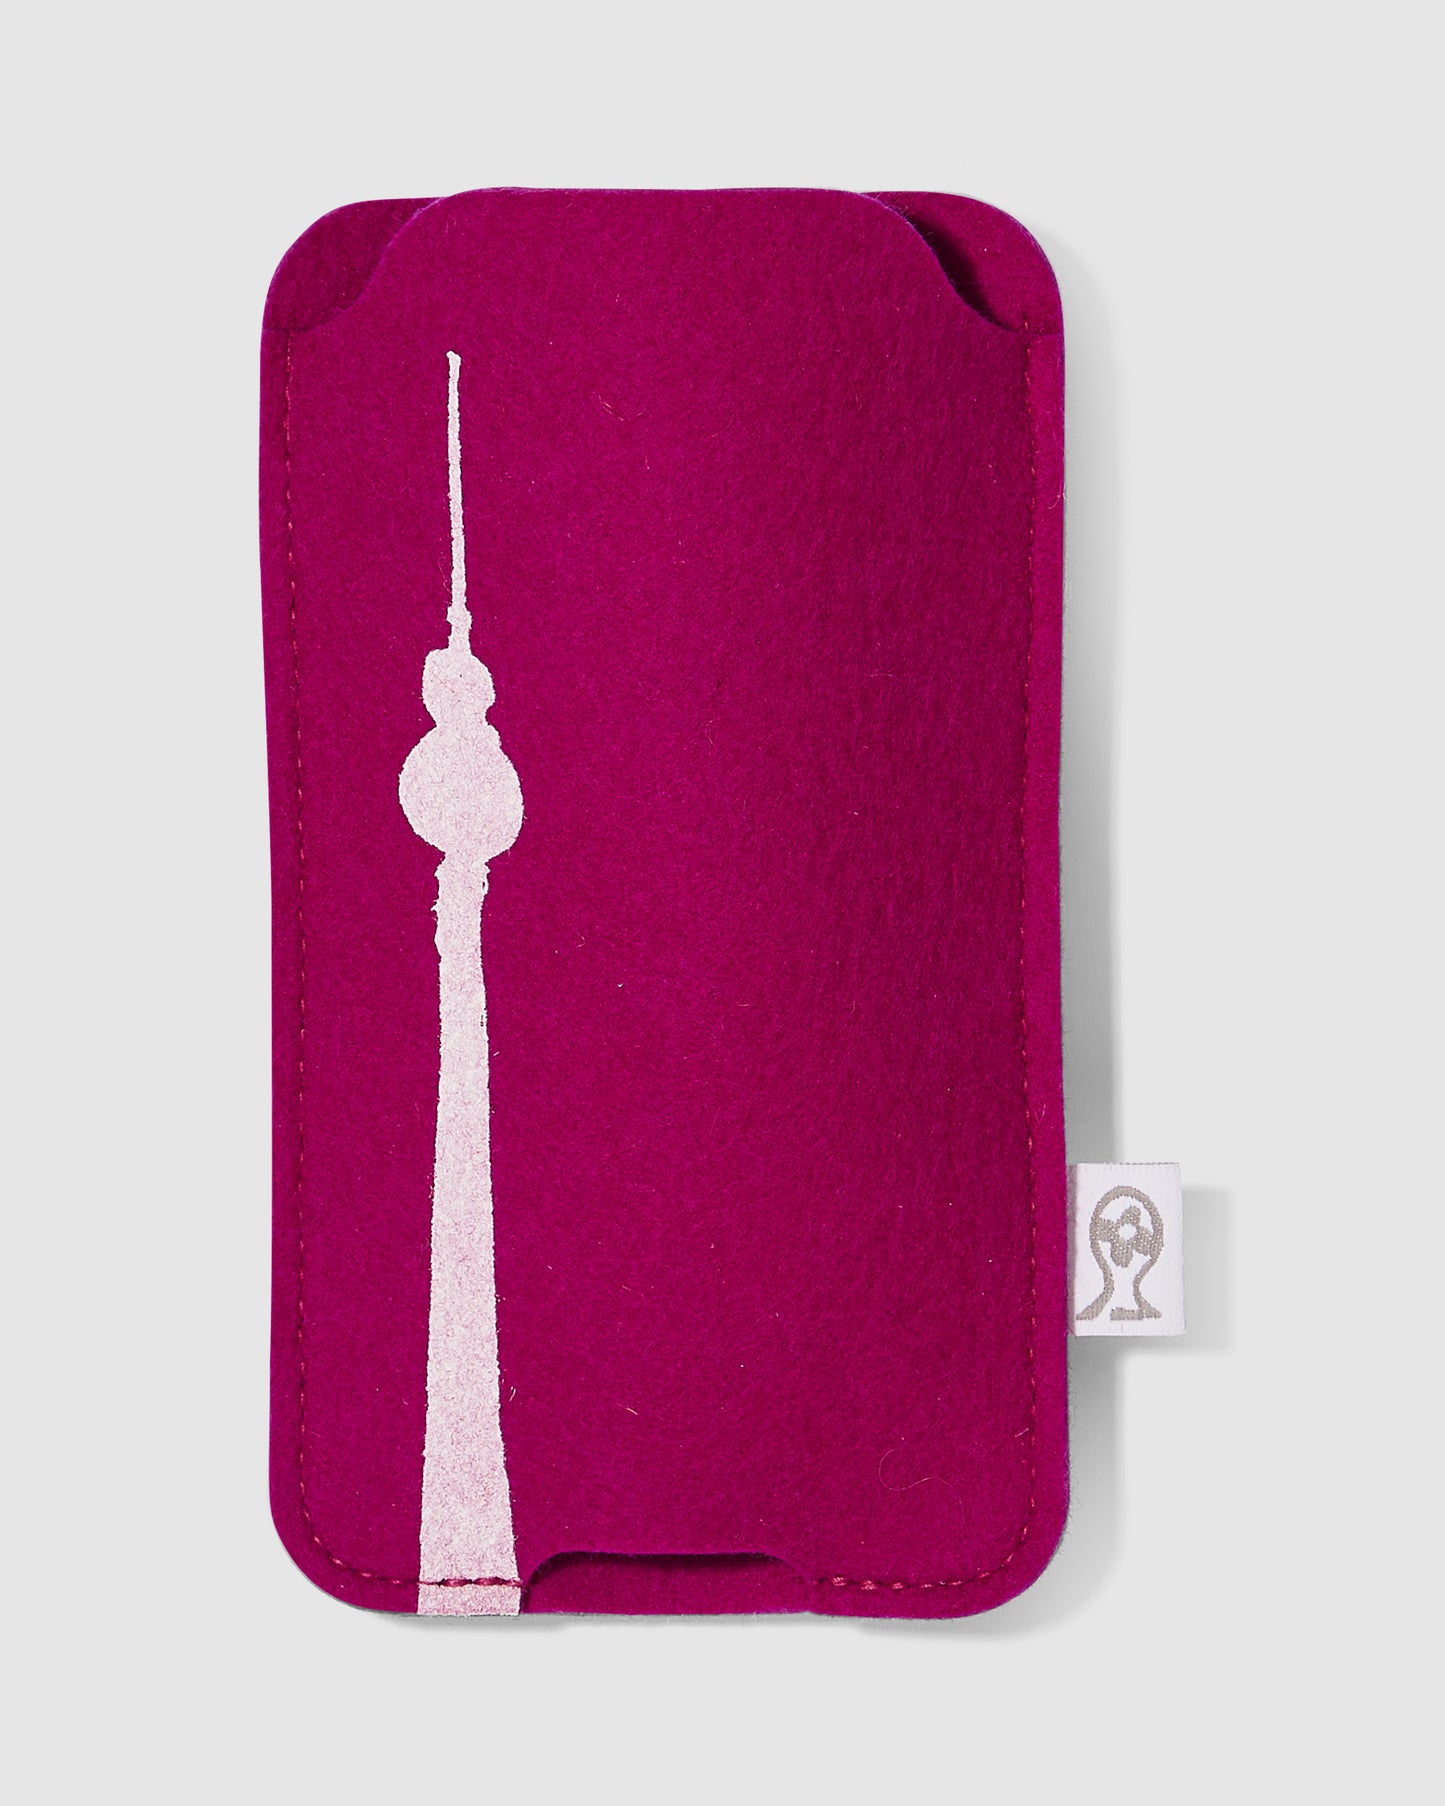 Brillenetui in pink, aus Filz, mit Brandenburger Tor verziert 